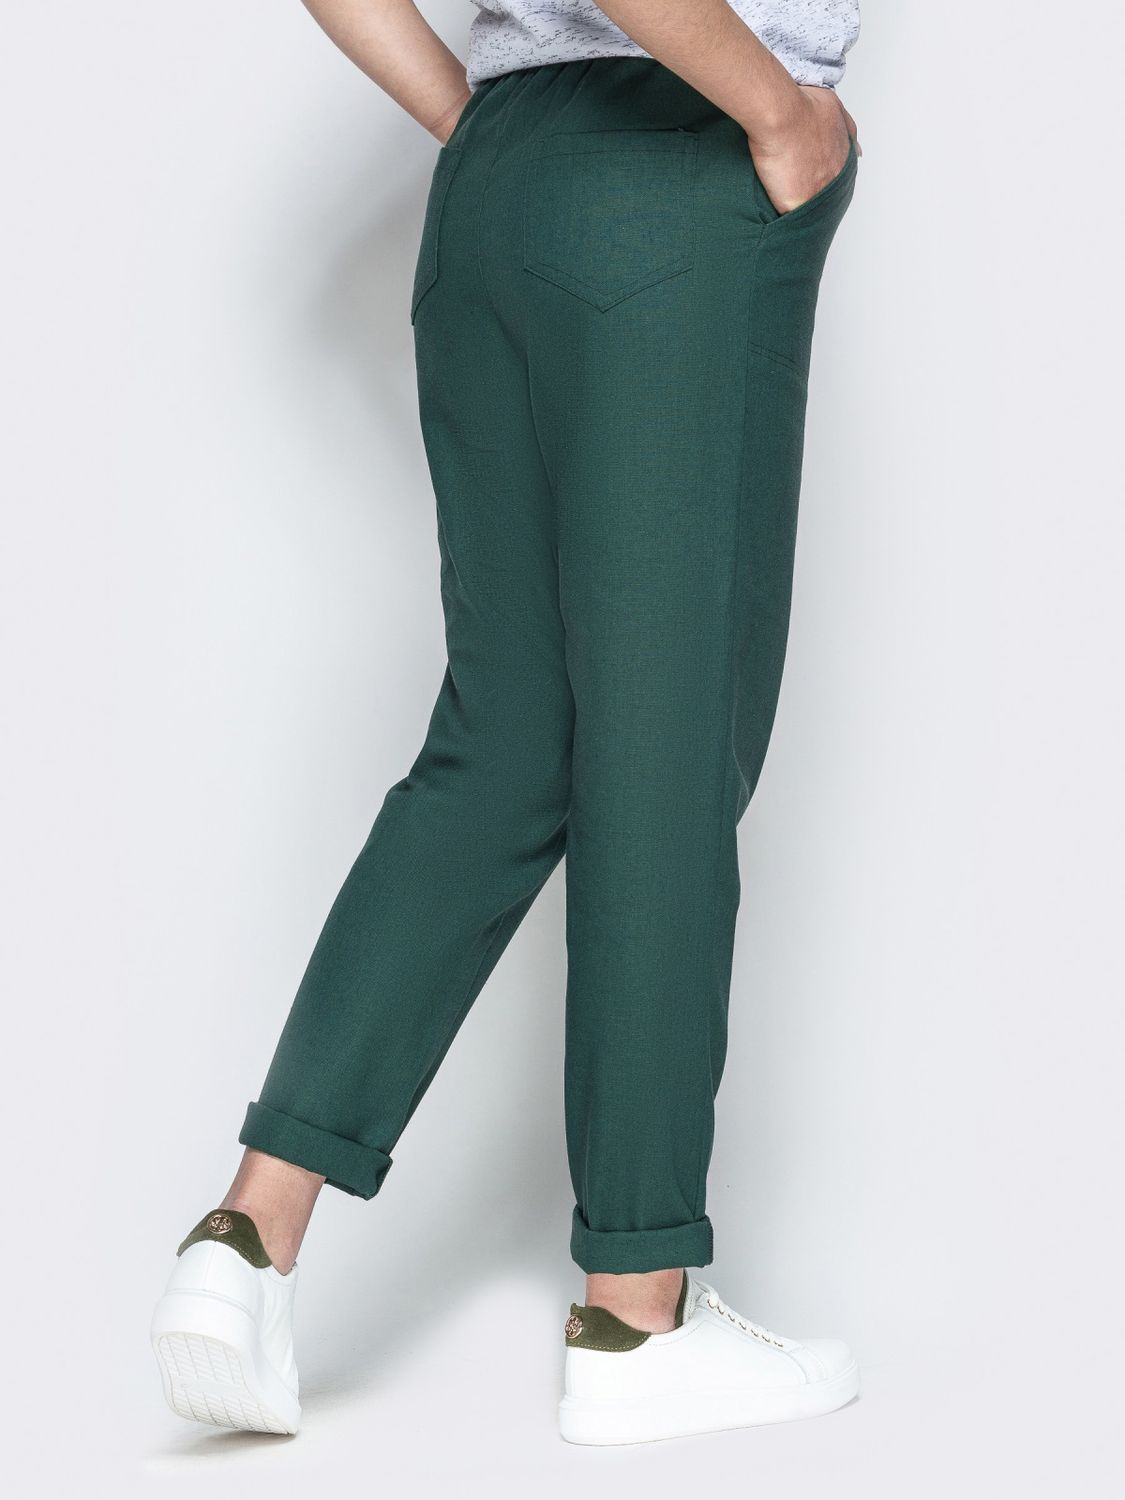 Льняные брюки на лето зеленого цвета - фото